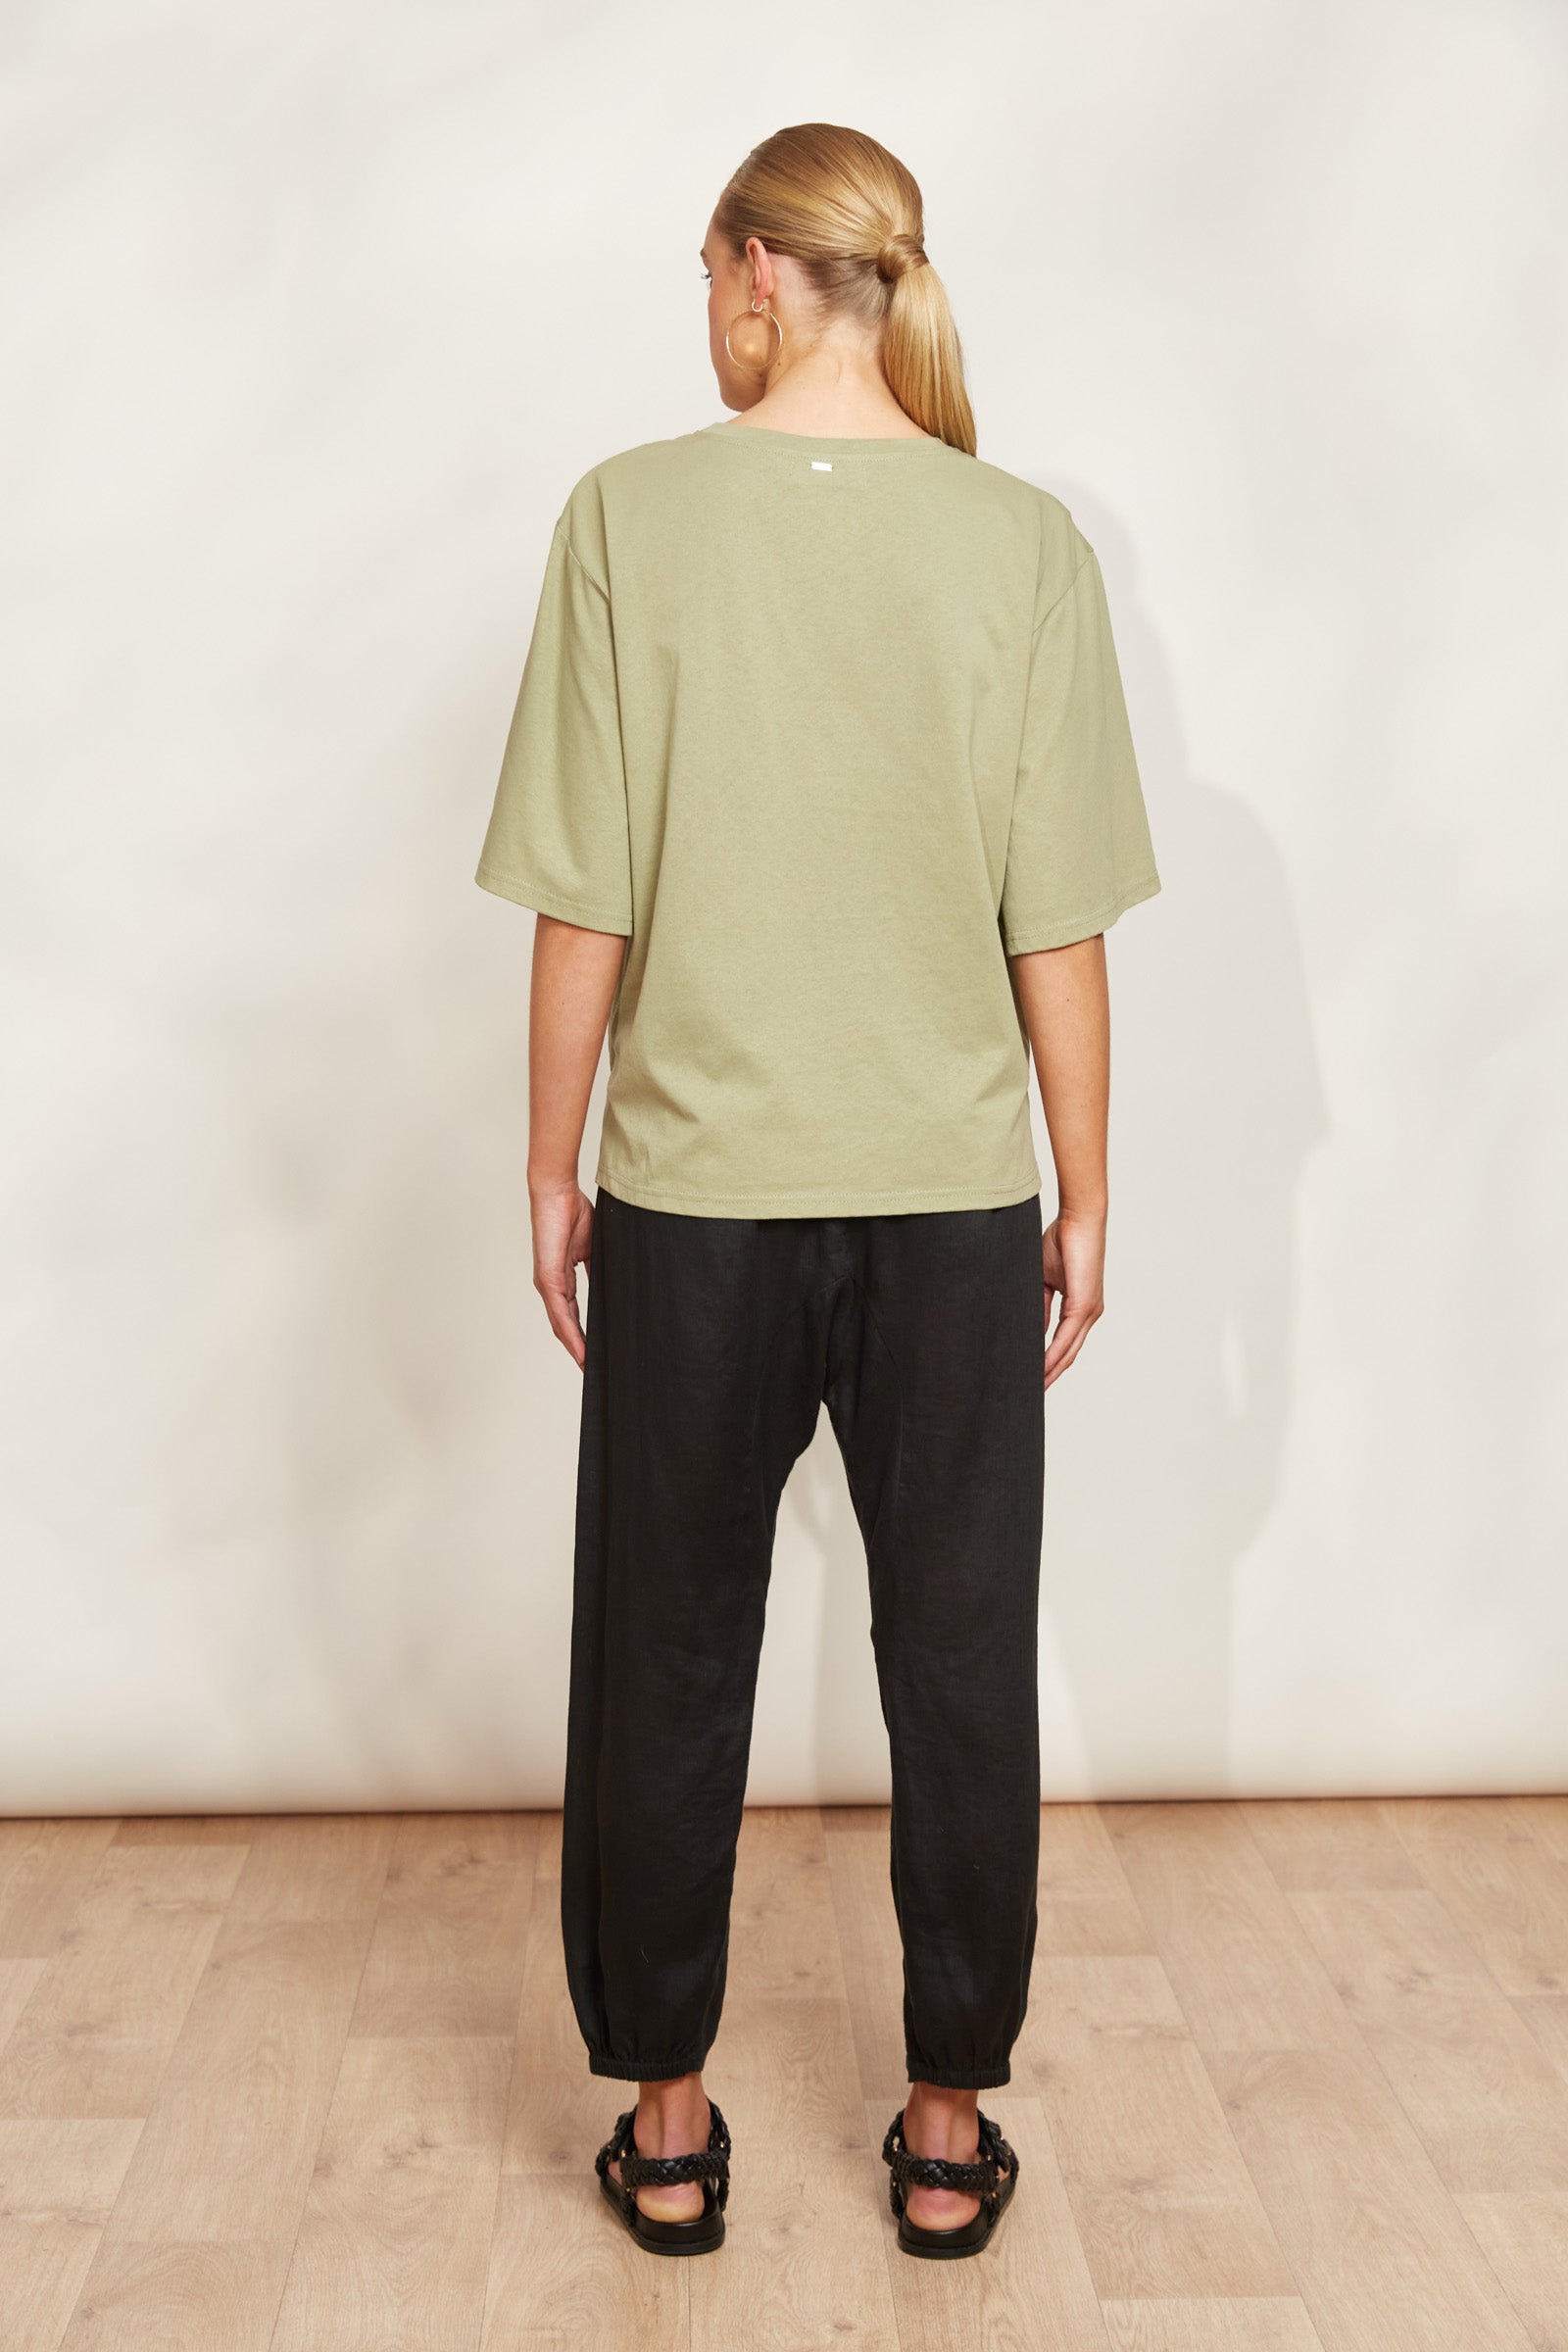 Studio Tshirt - Khaki - eb&ive Clothing - Top Tshirt S/S